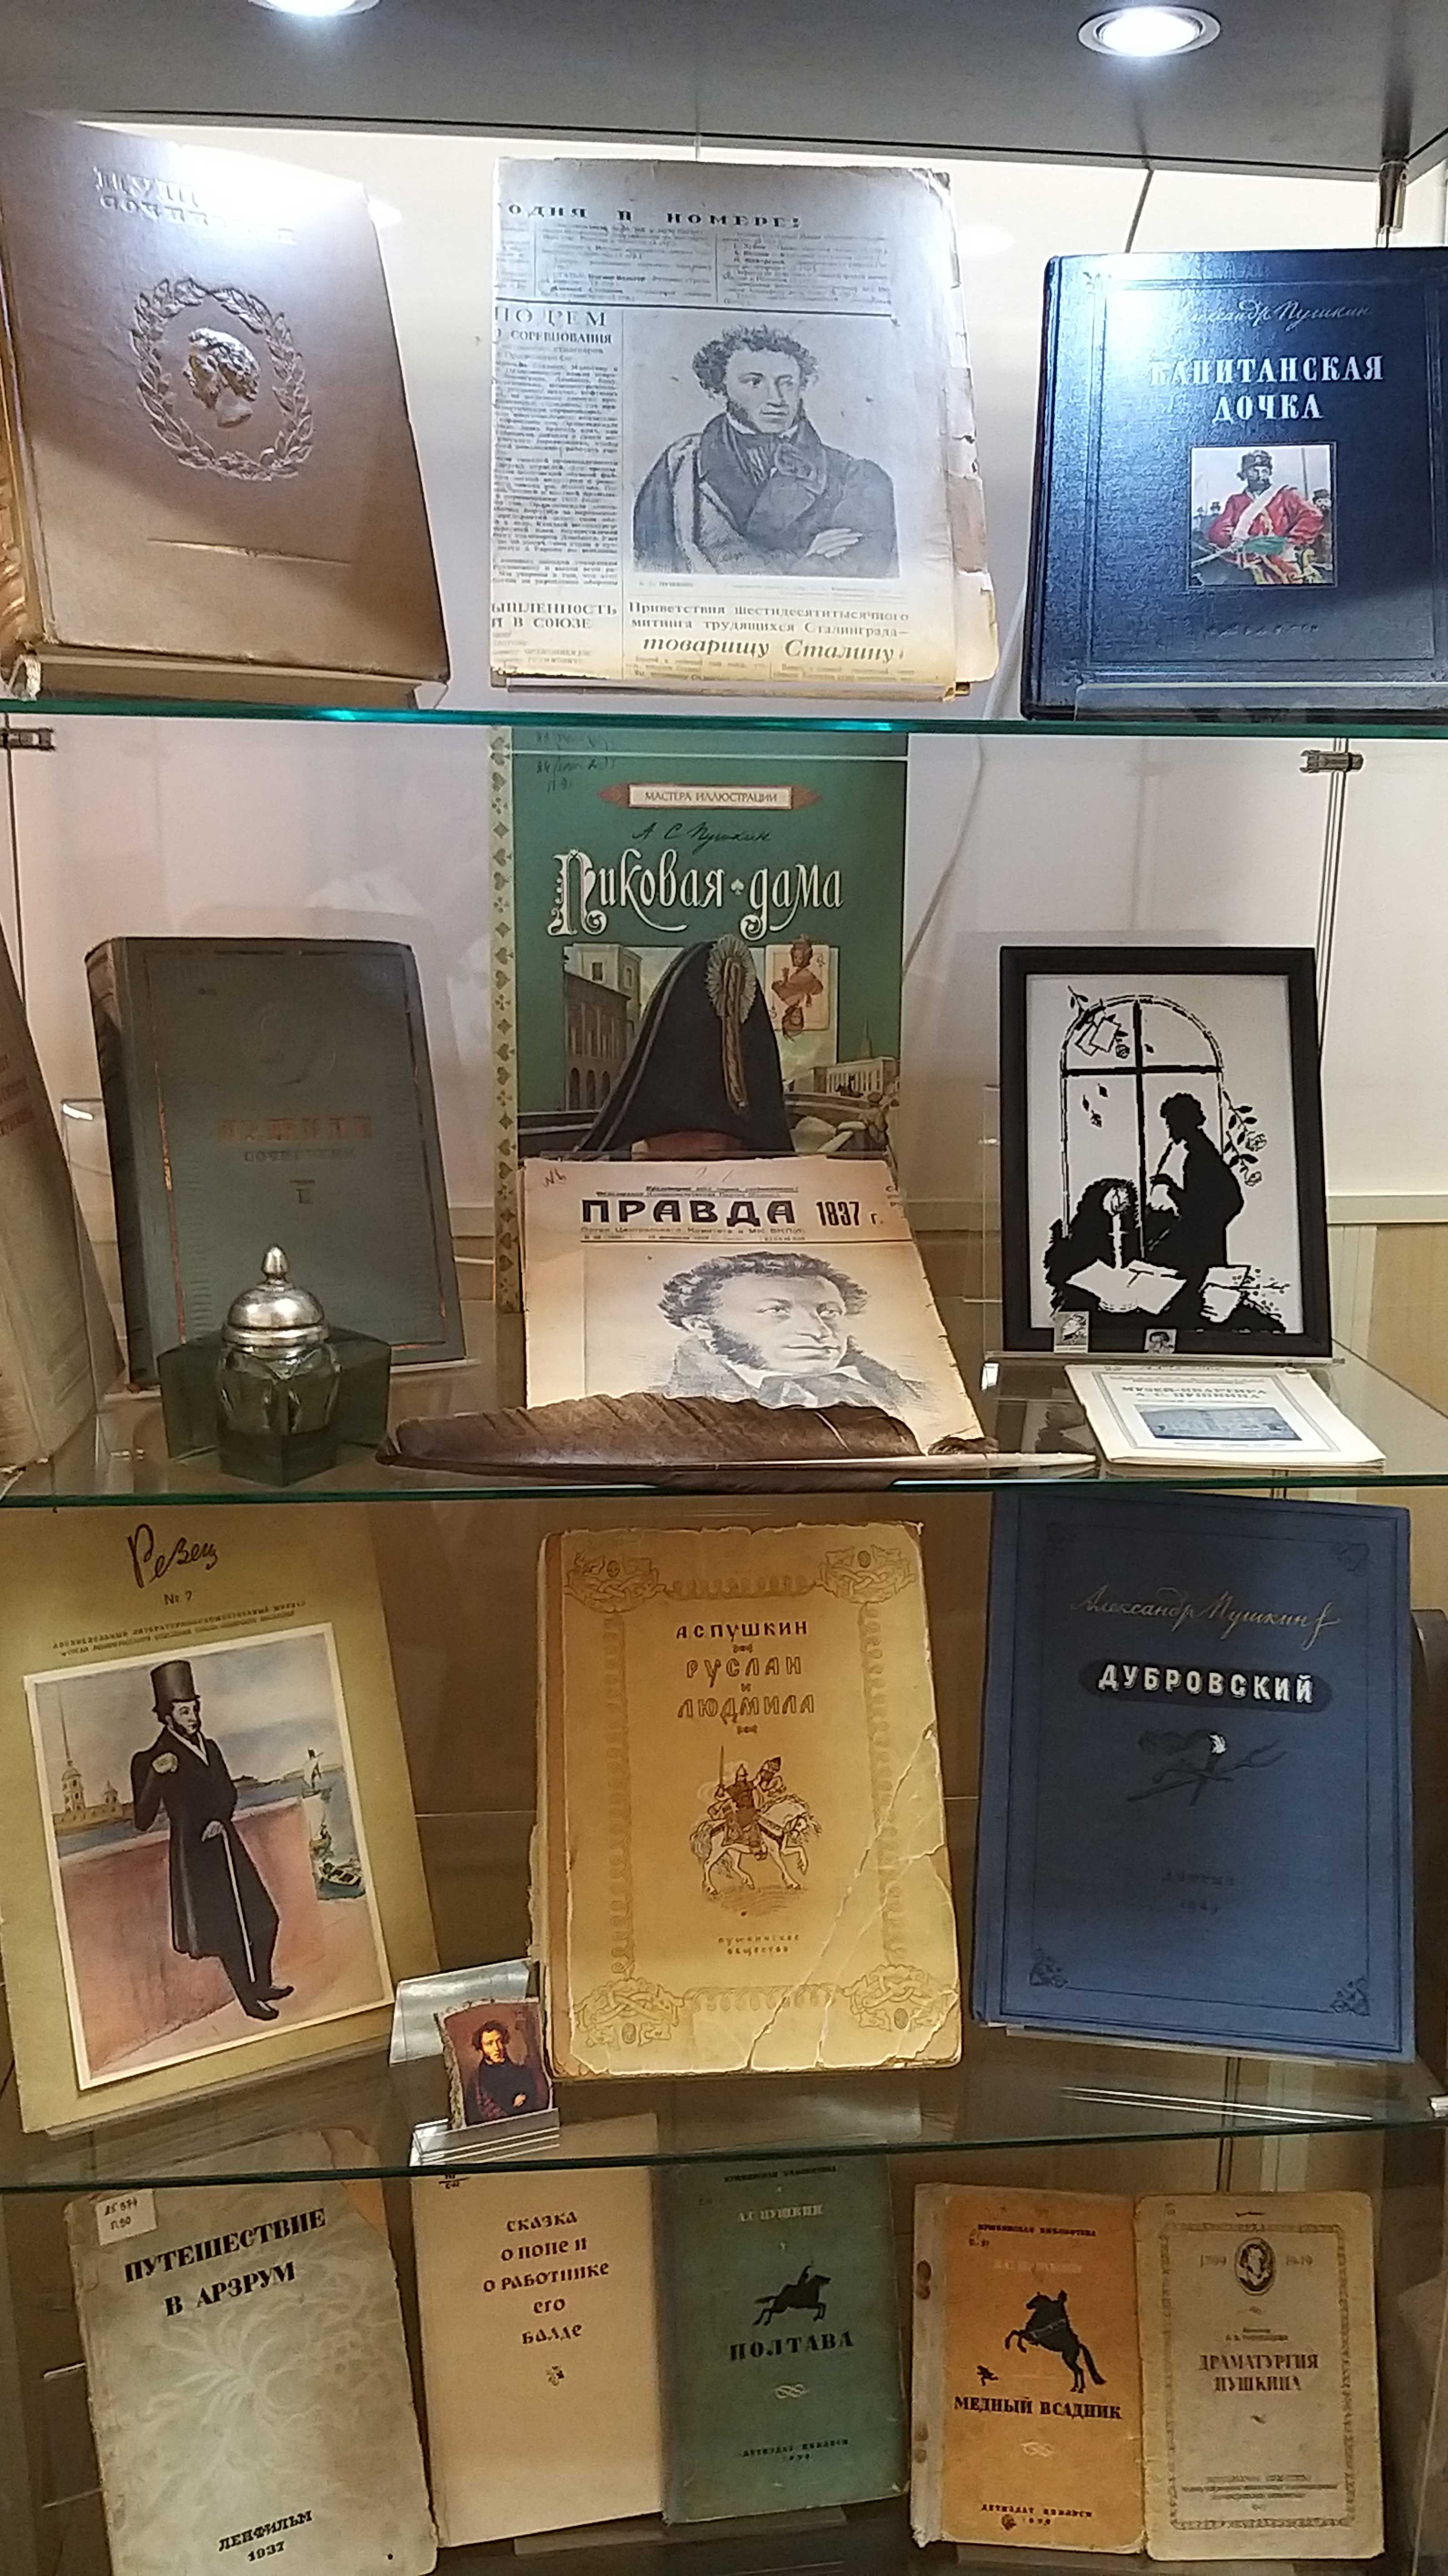 Юношеская библиотека имени Аркадия Гайдара (Большой пр., 18 ) приглашает на экскурсию по выставке уникальных изданий и документов о жизни и творчестве А.С. Пушкина. 